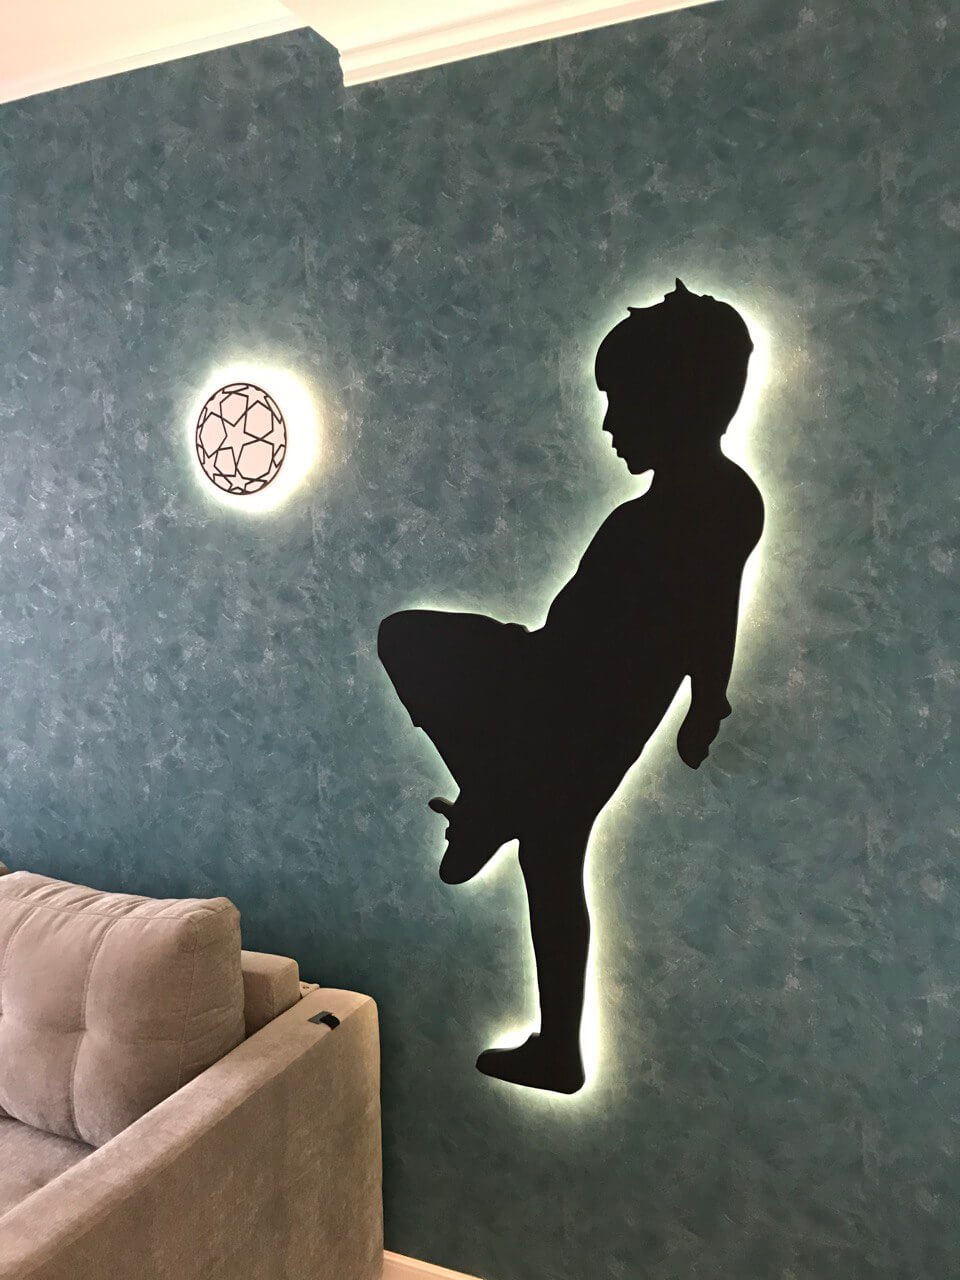 на фото светилиник на стенке в детской комнате. Он сделан в форме мальчика который пинает футбольный мяч